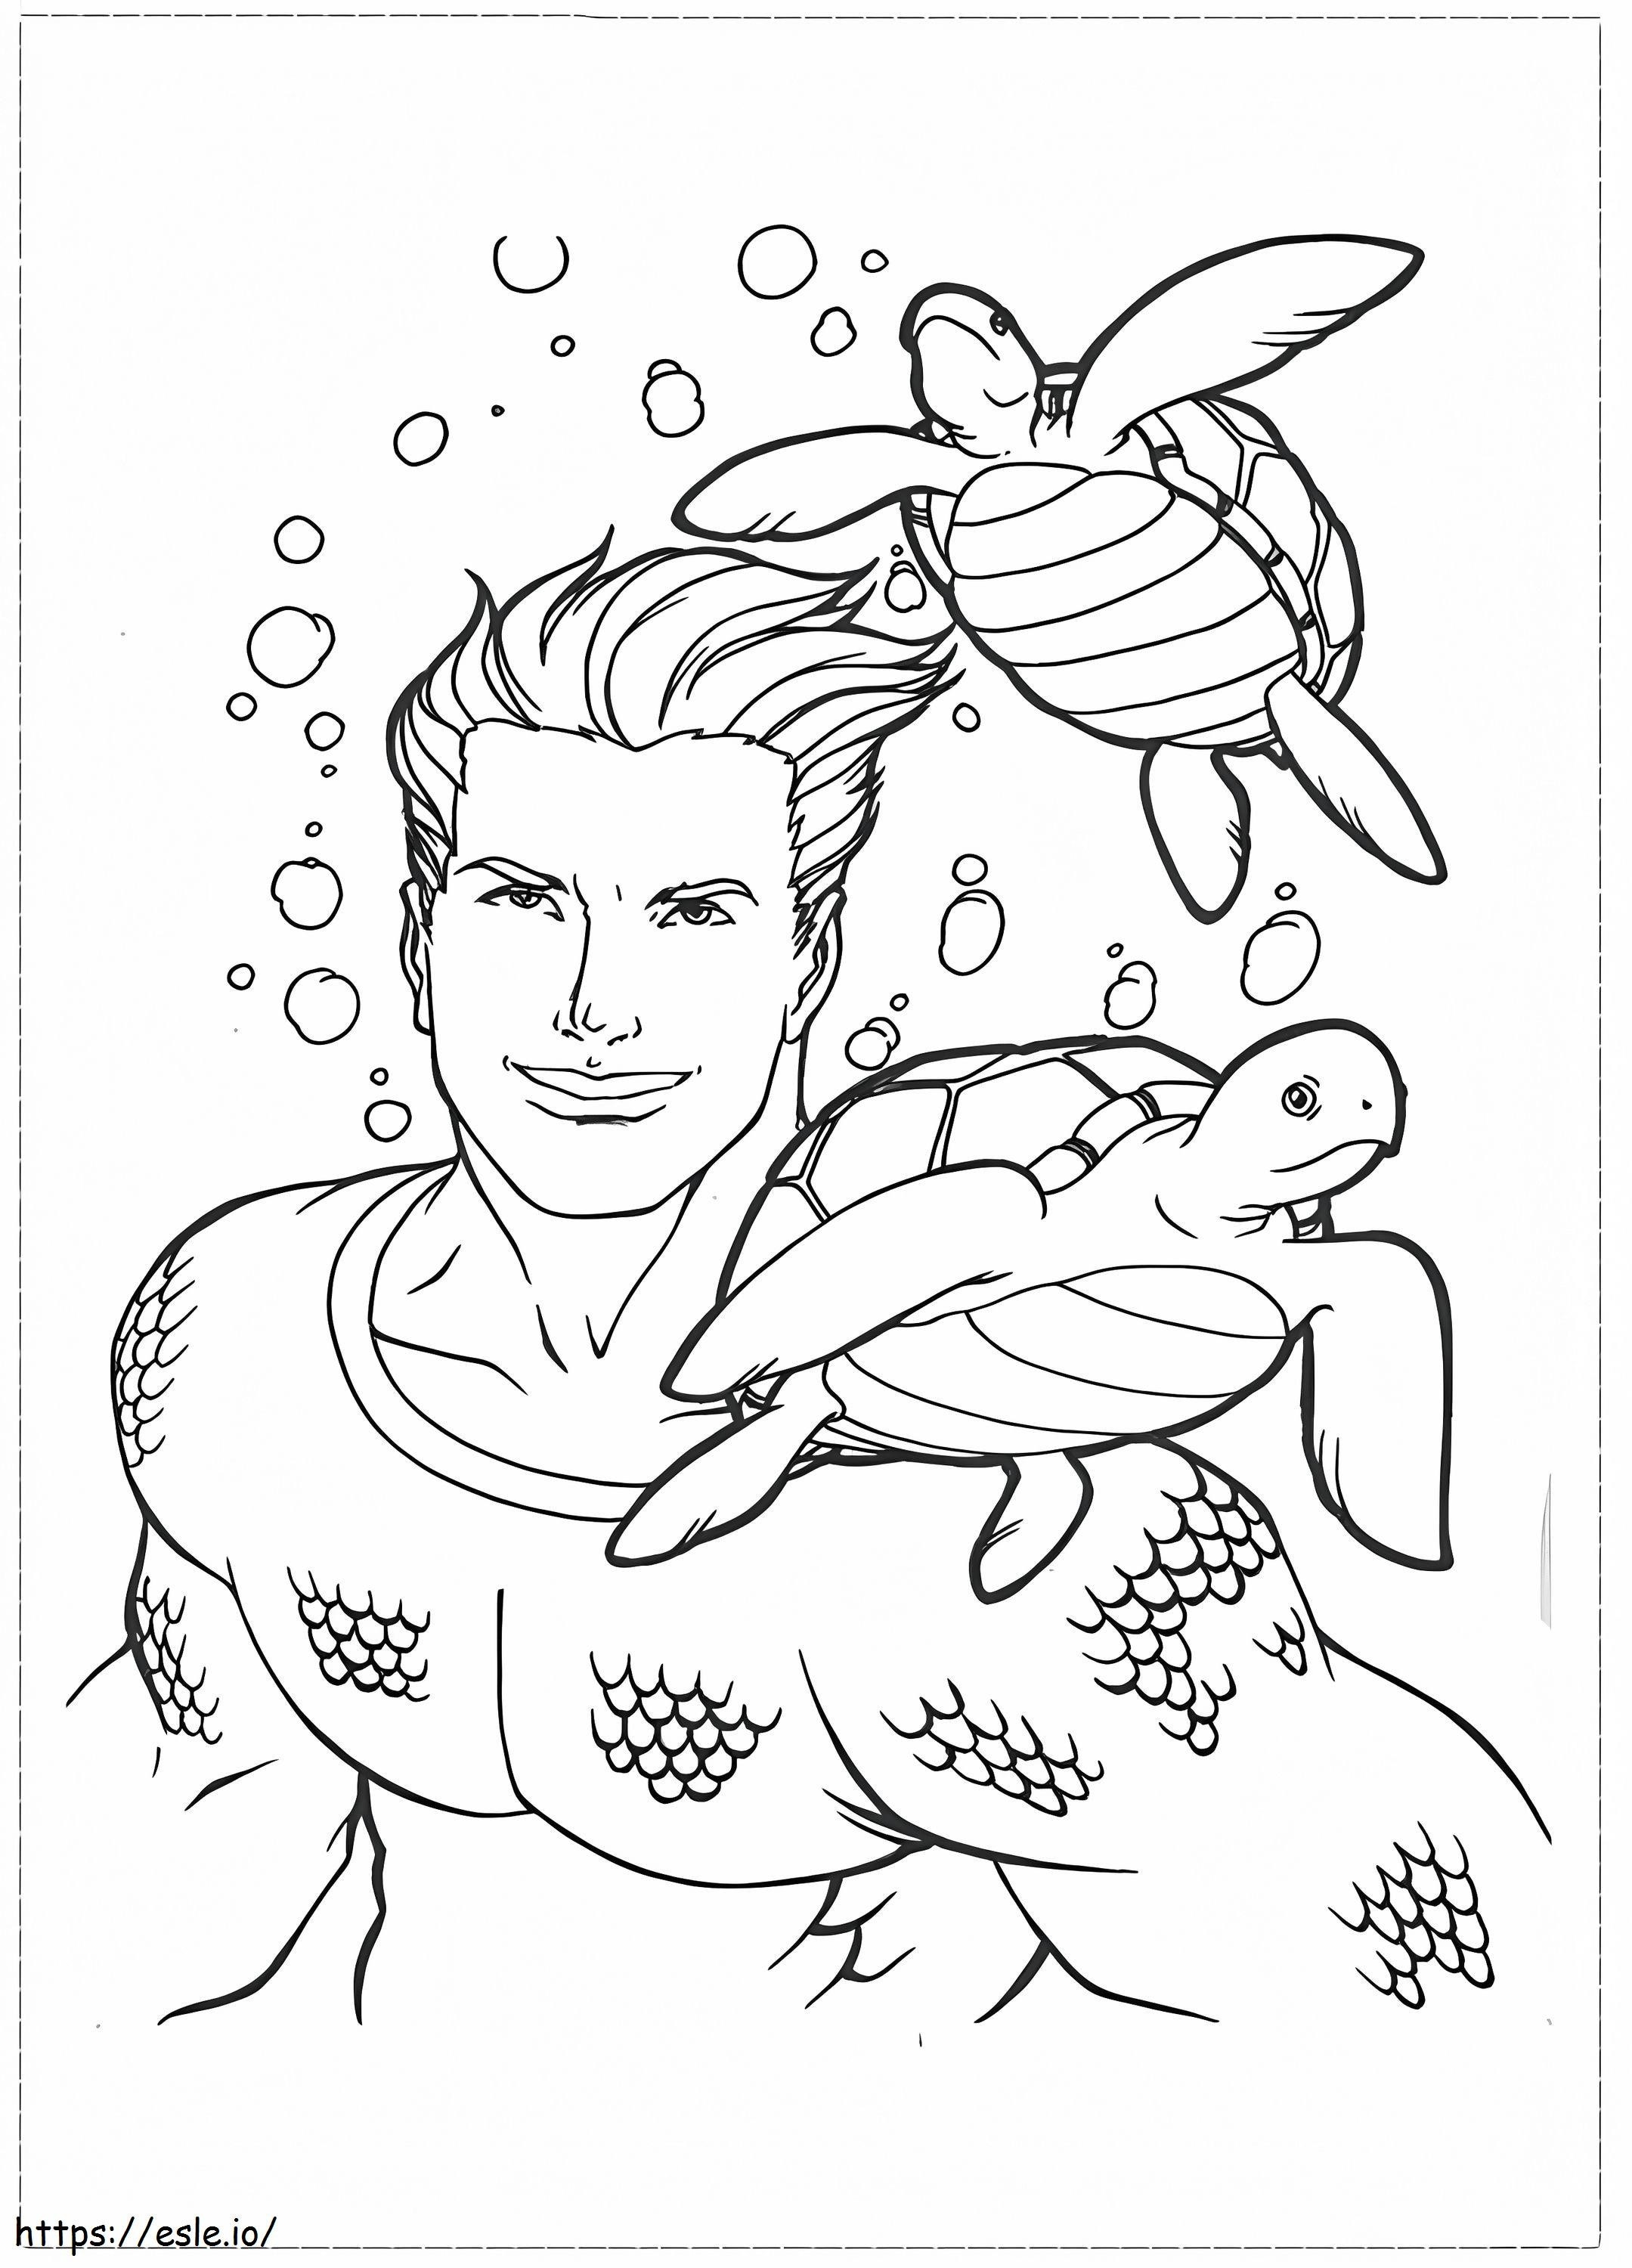 Aquaman e due tartarughe da colorare